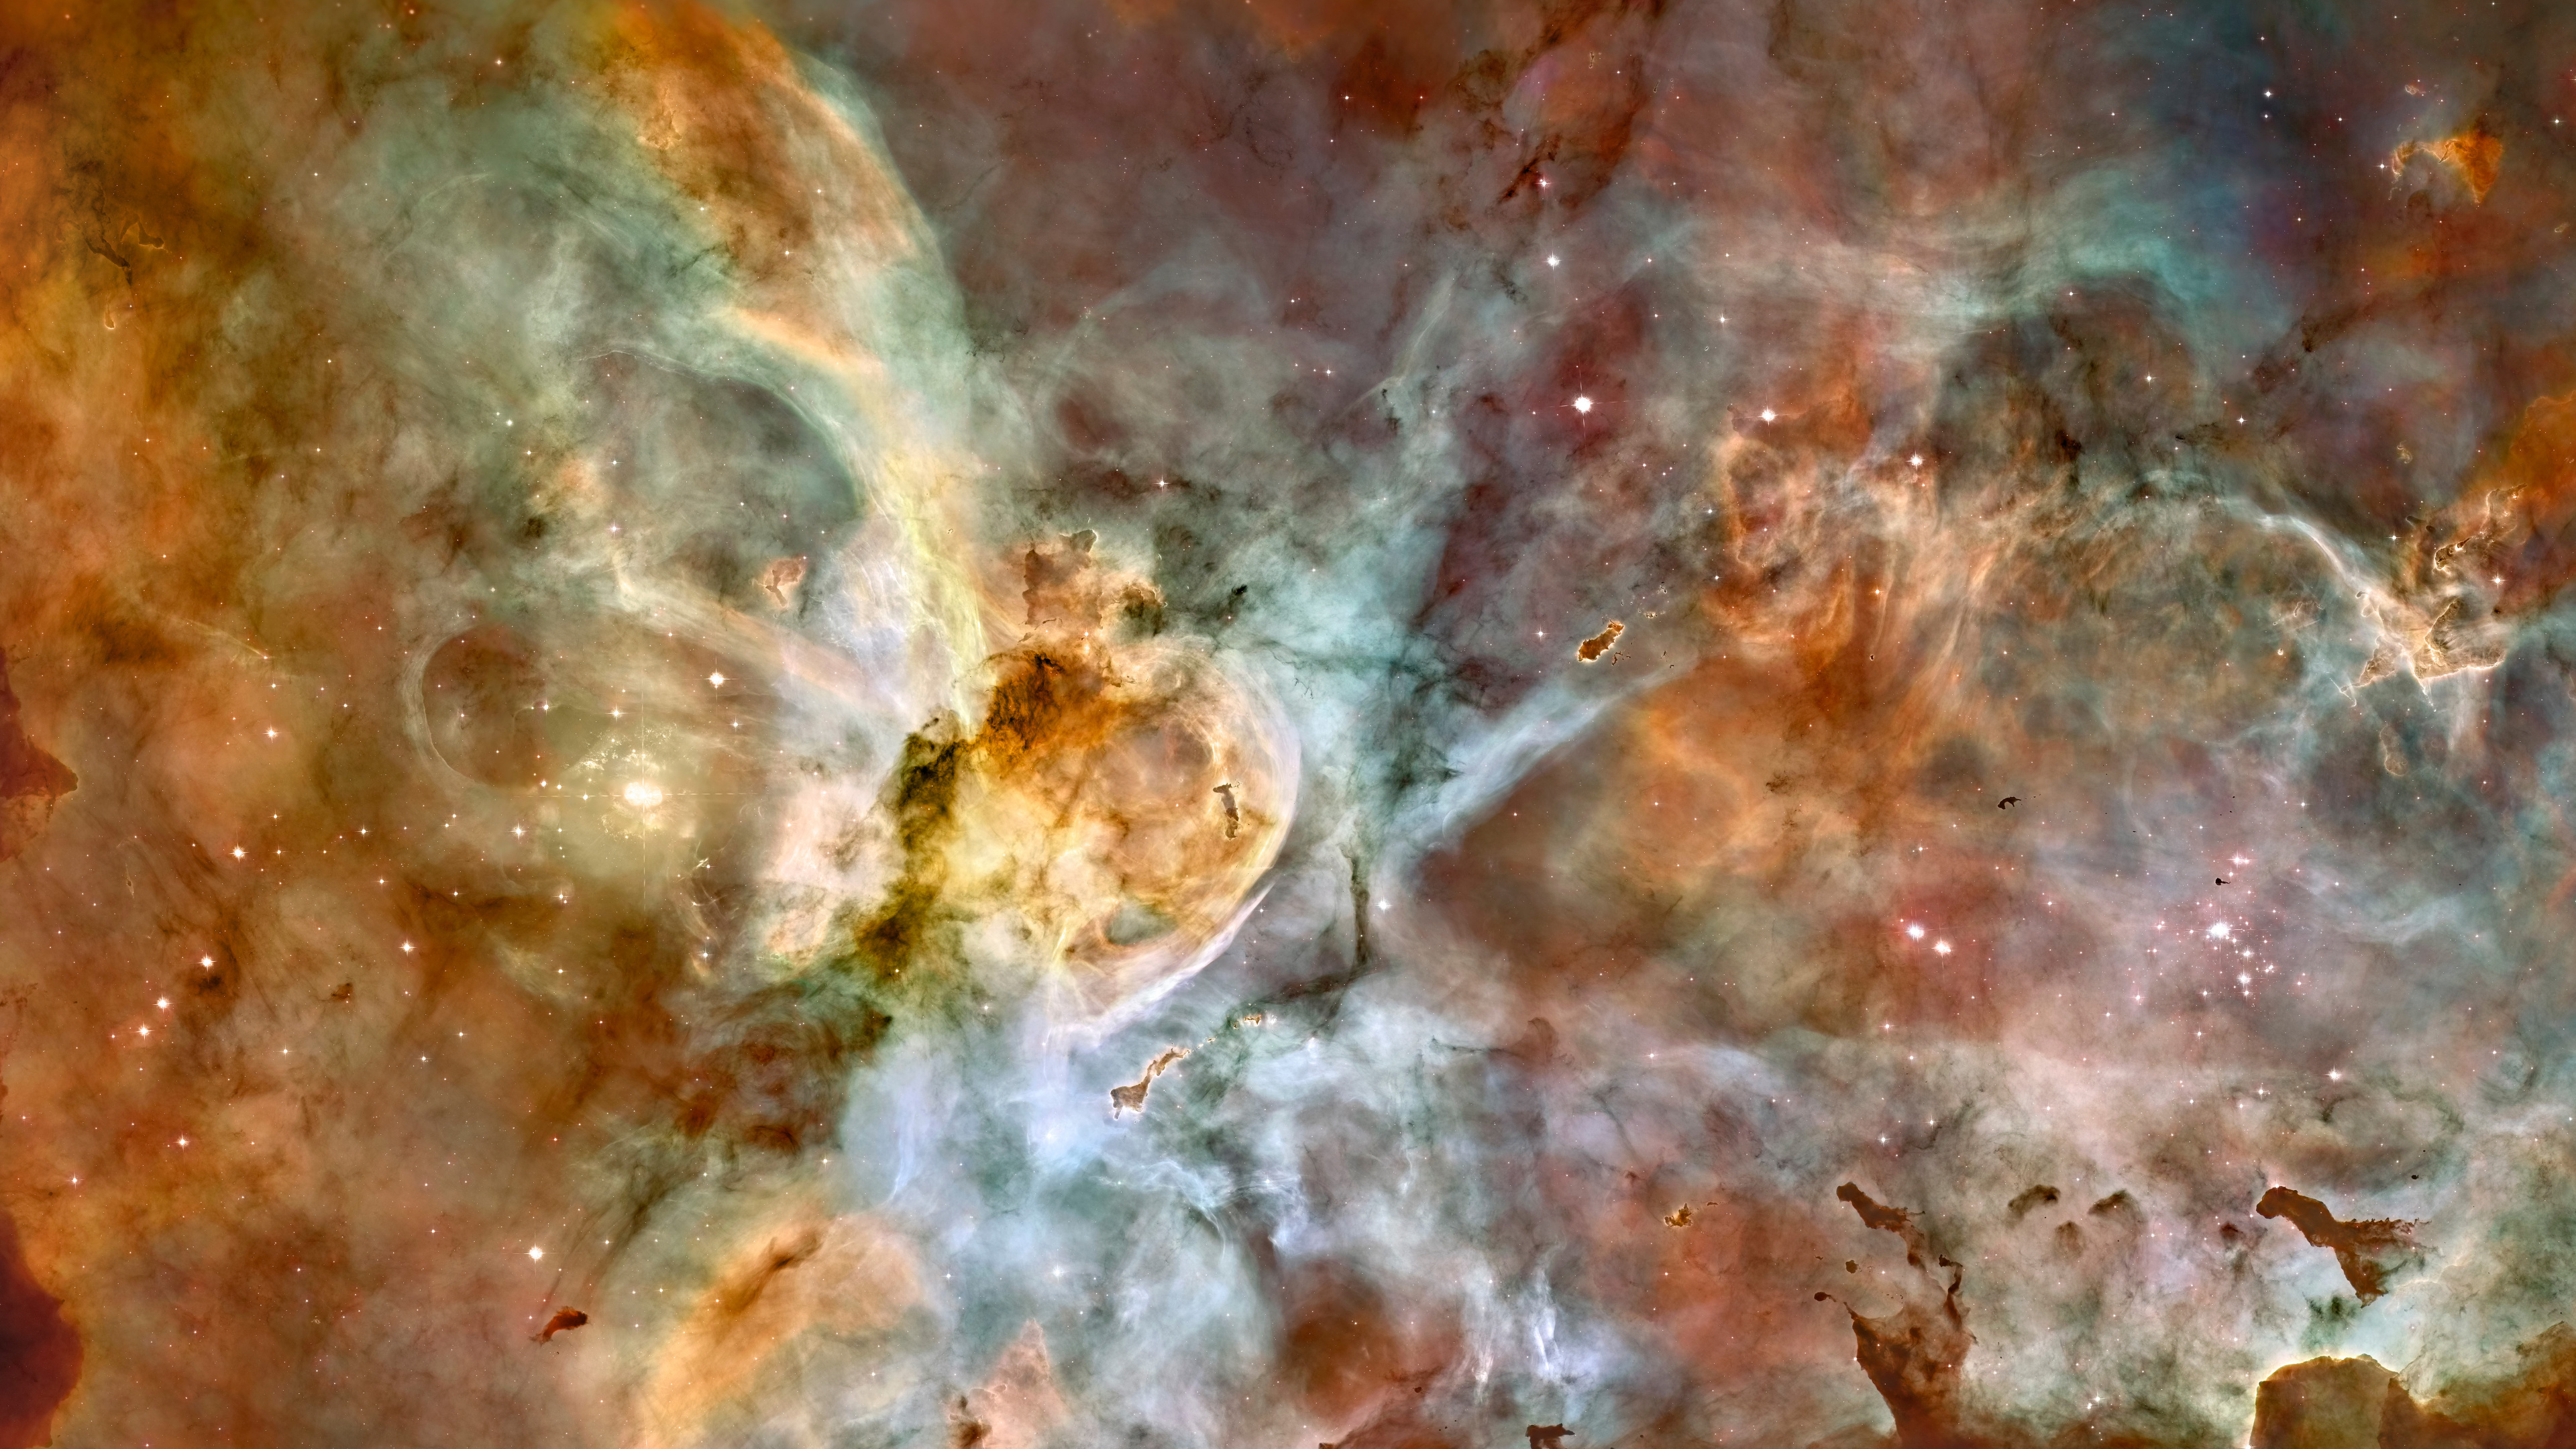 Carina星云, 哈勃太空望远镜, 明星, 空间, 天文学对象 壁纸 3840x2160 允许